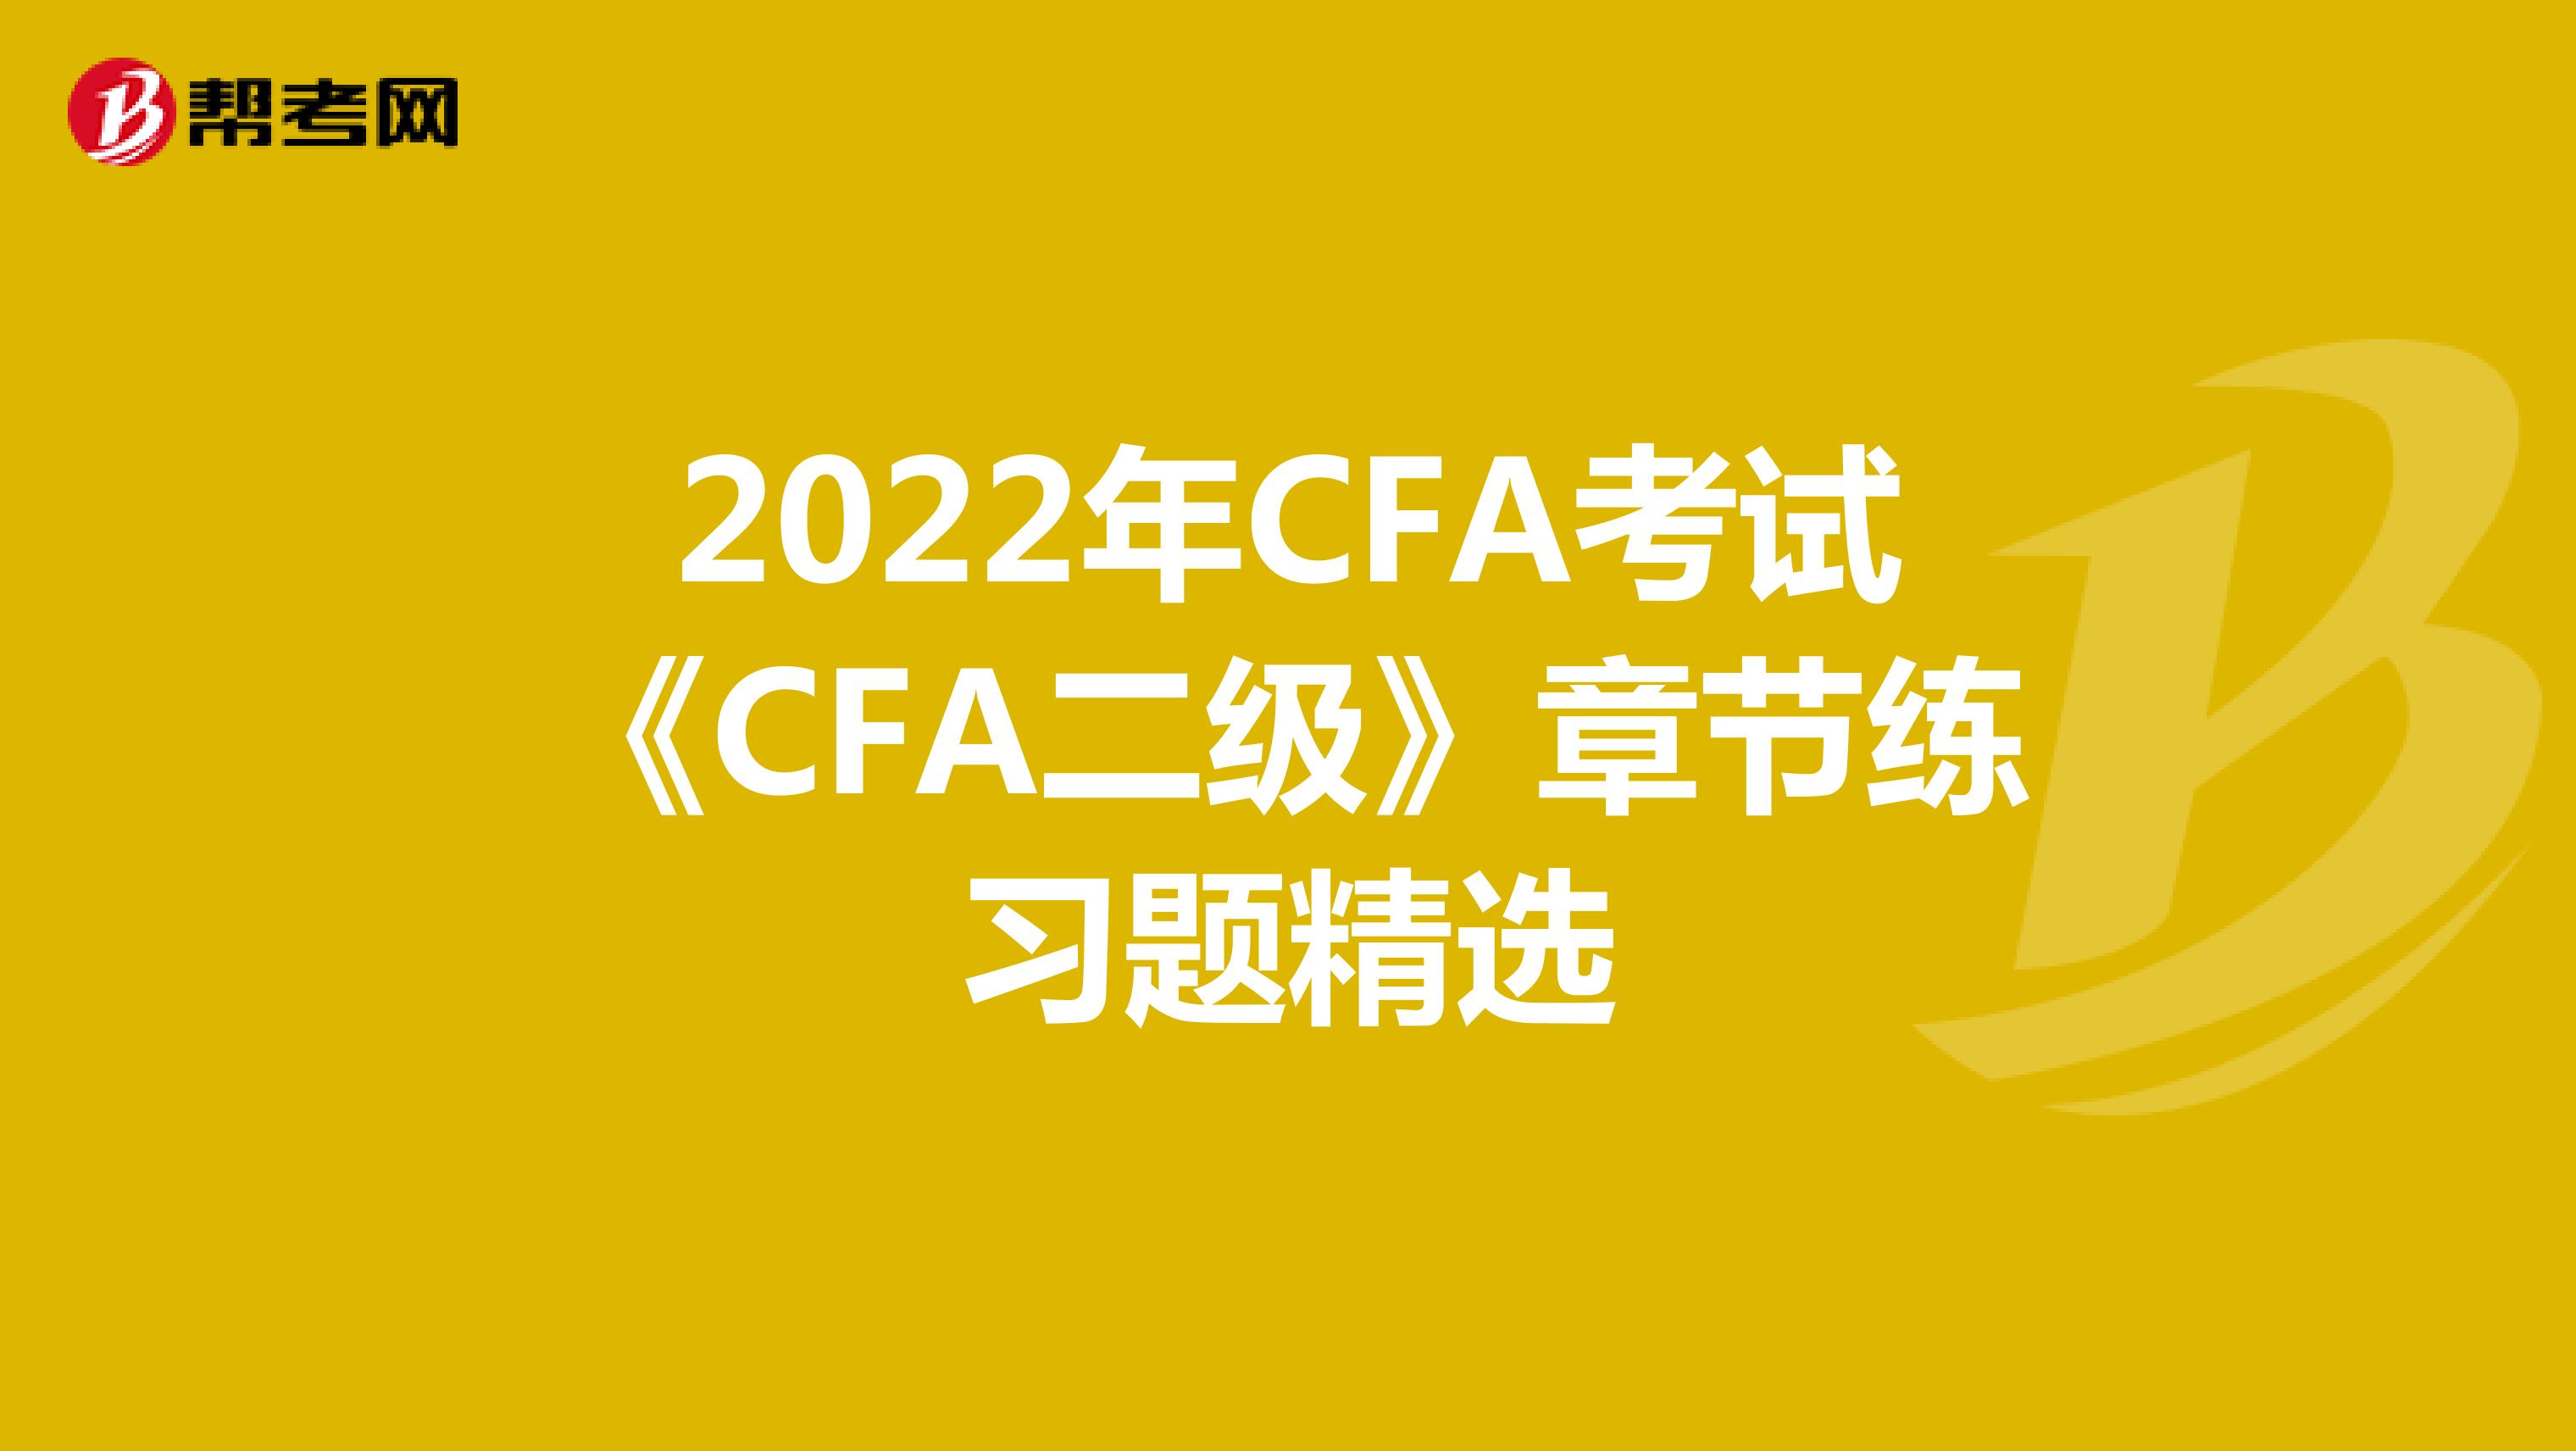 2022年CFA考试《CFA二级》章节练习题精选